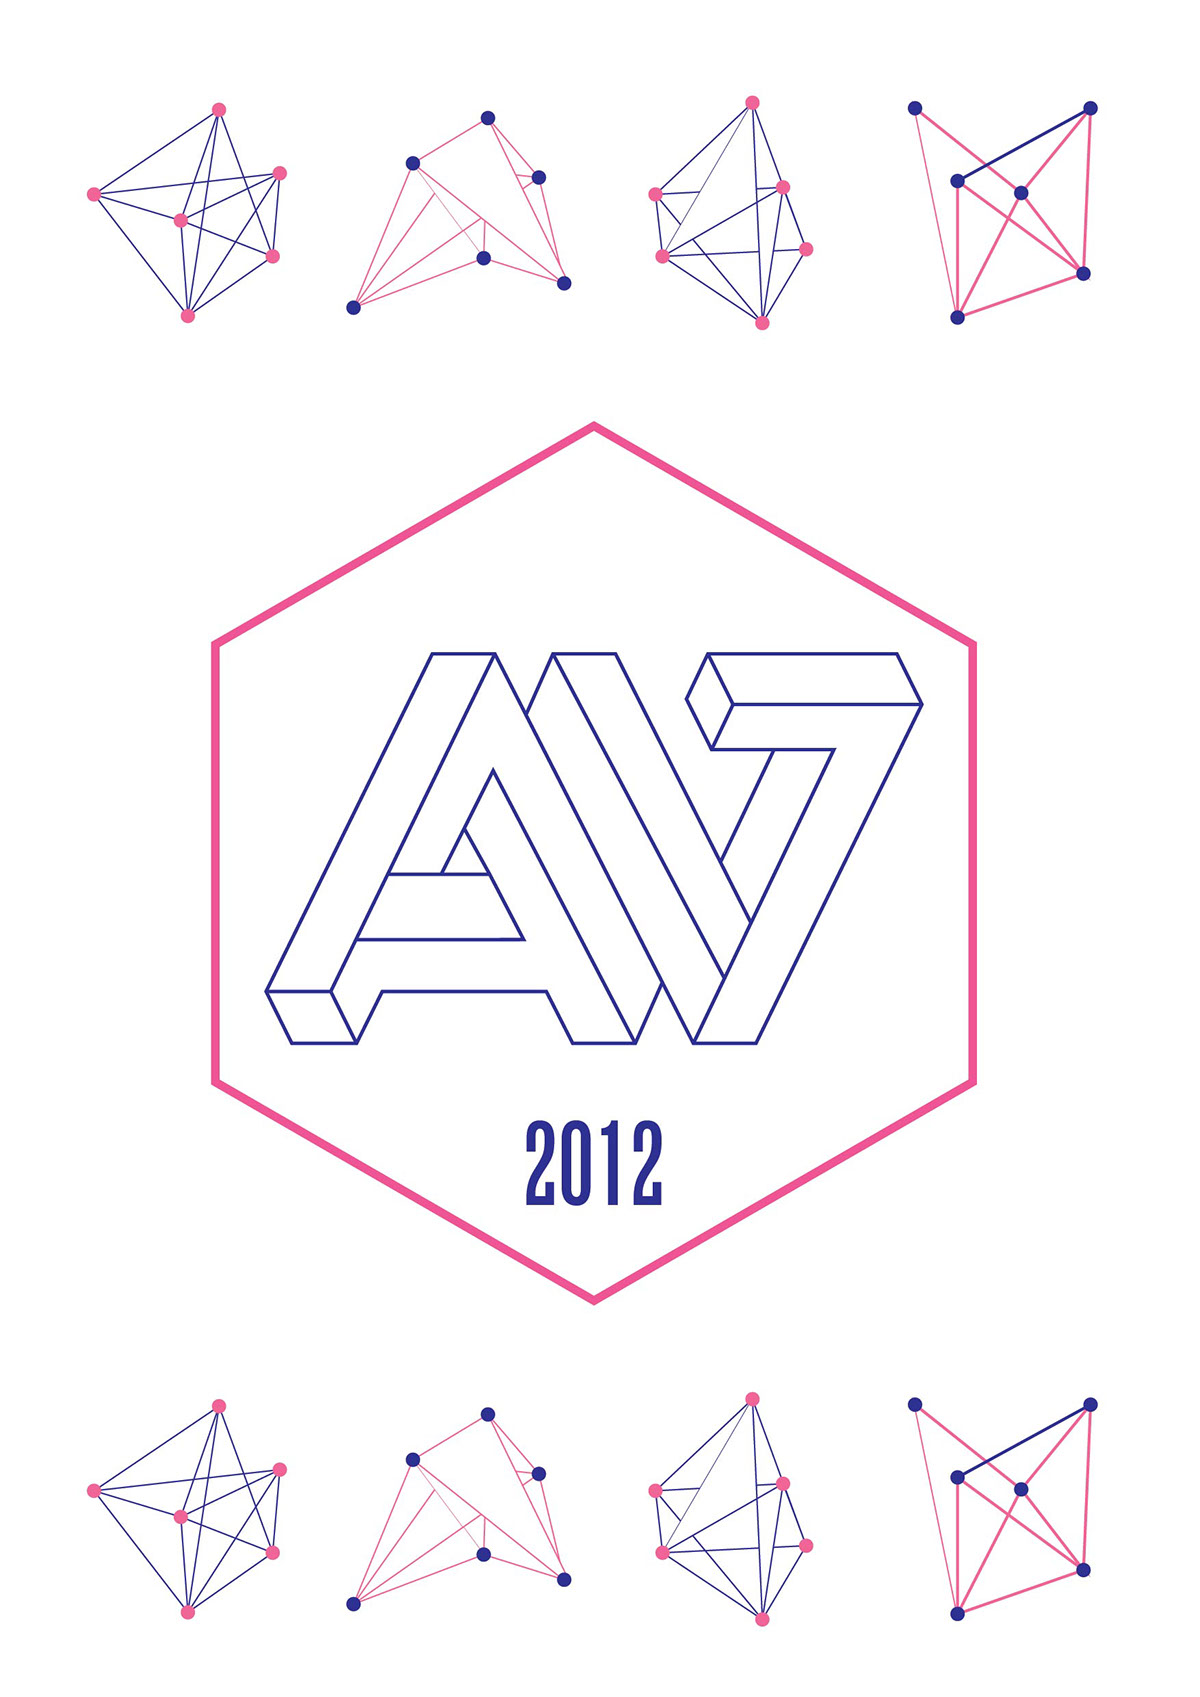 logo penrose triangle